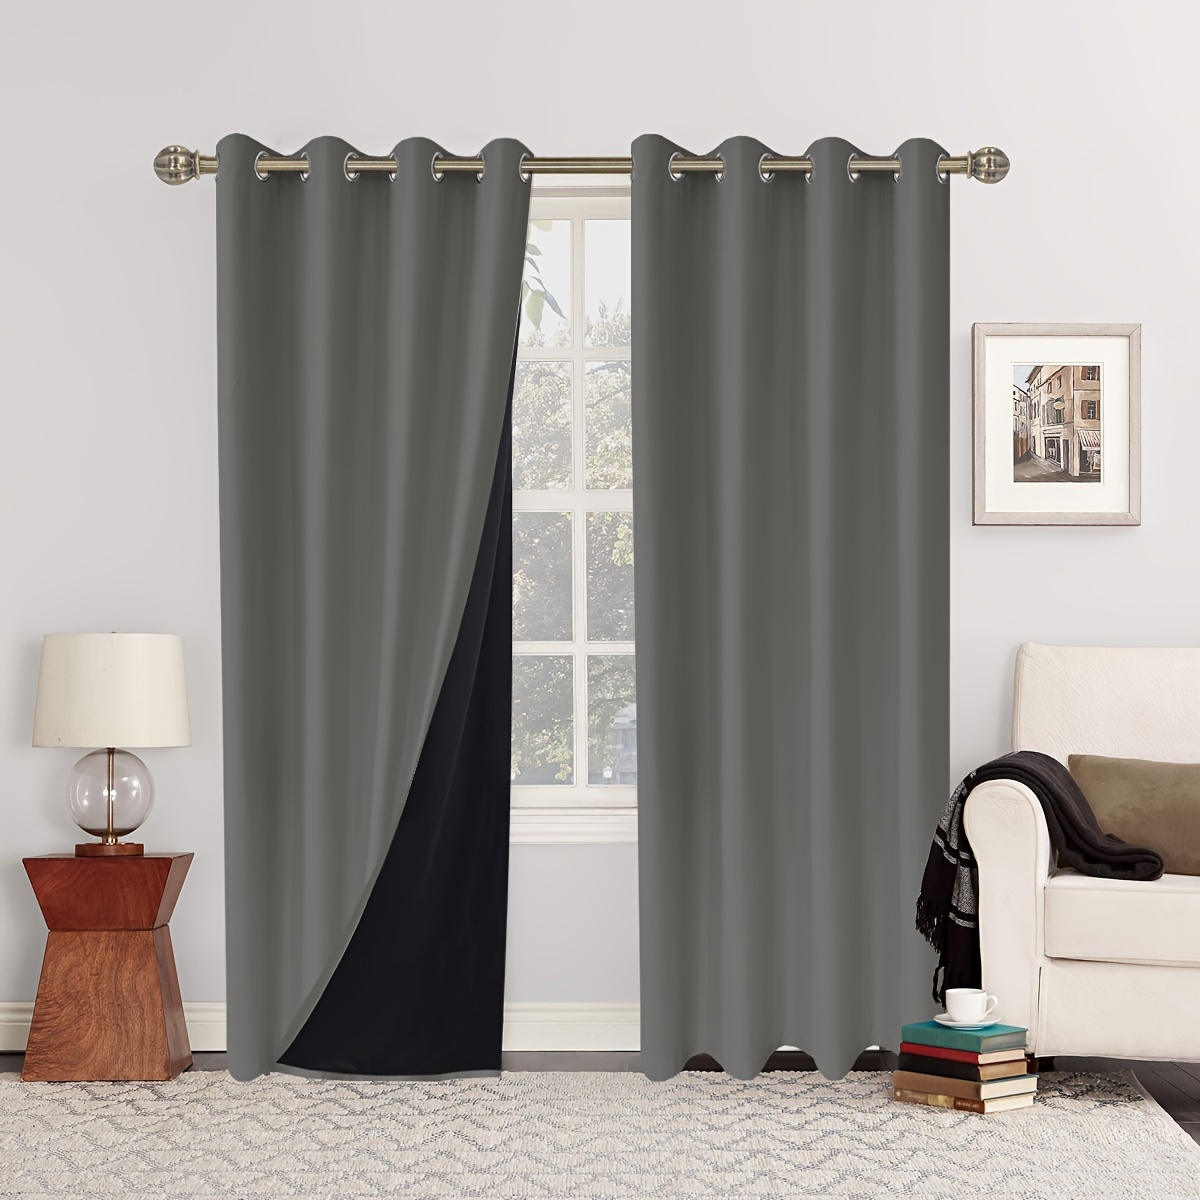 Cortinas opacas de color negro degradado para dormitorio, sala de estar,  gradiente gris y negro, con aislamiento térmico, para exteriores, hotel